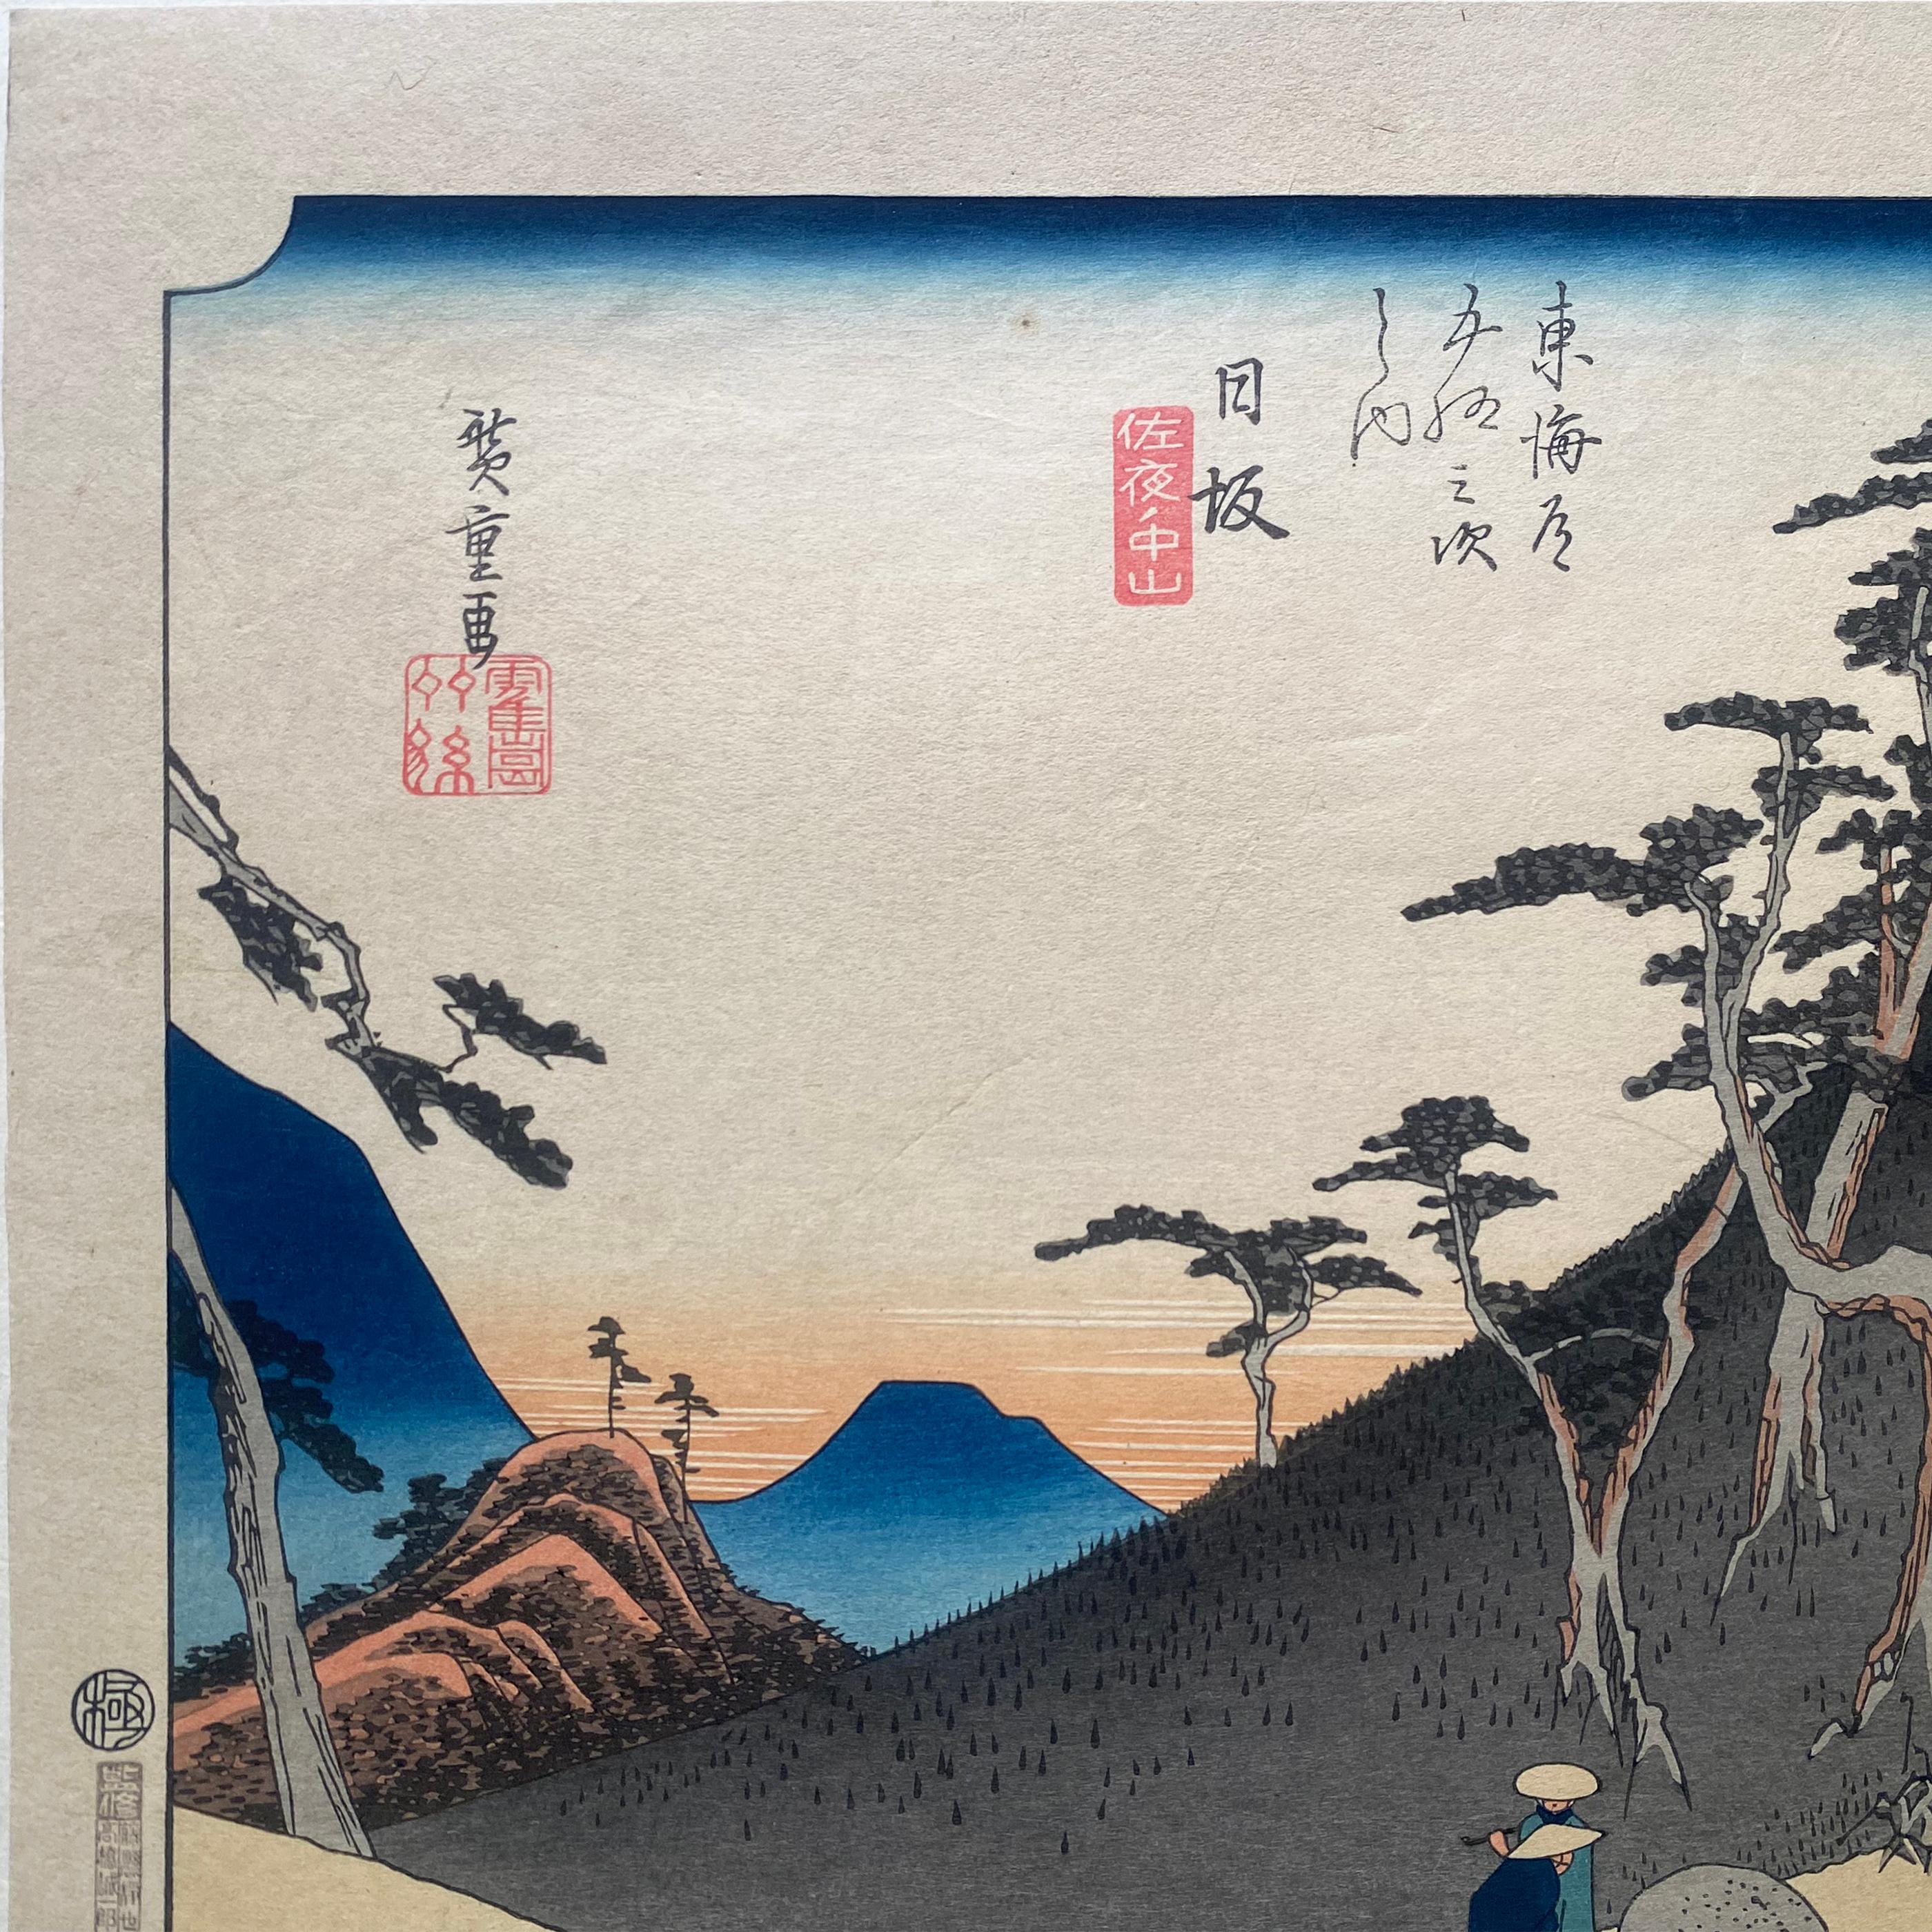 'View of Nissaka', After Utagawa Hiroshige 歌川廣重, Ukiyo-e Woodblock, Tokaido - Print by Utagawa Hiroshige (Ando Hiroshige)